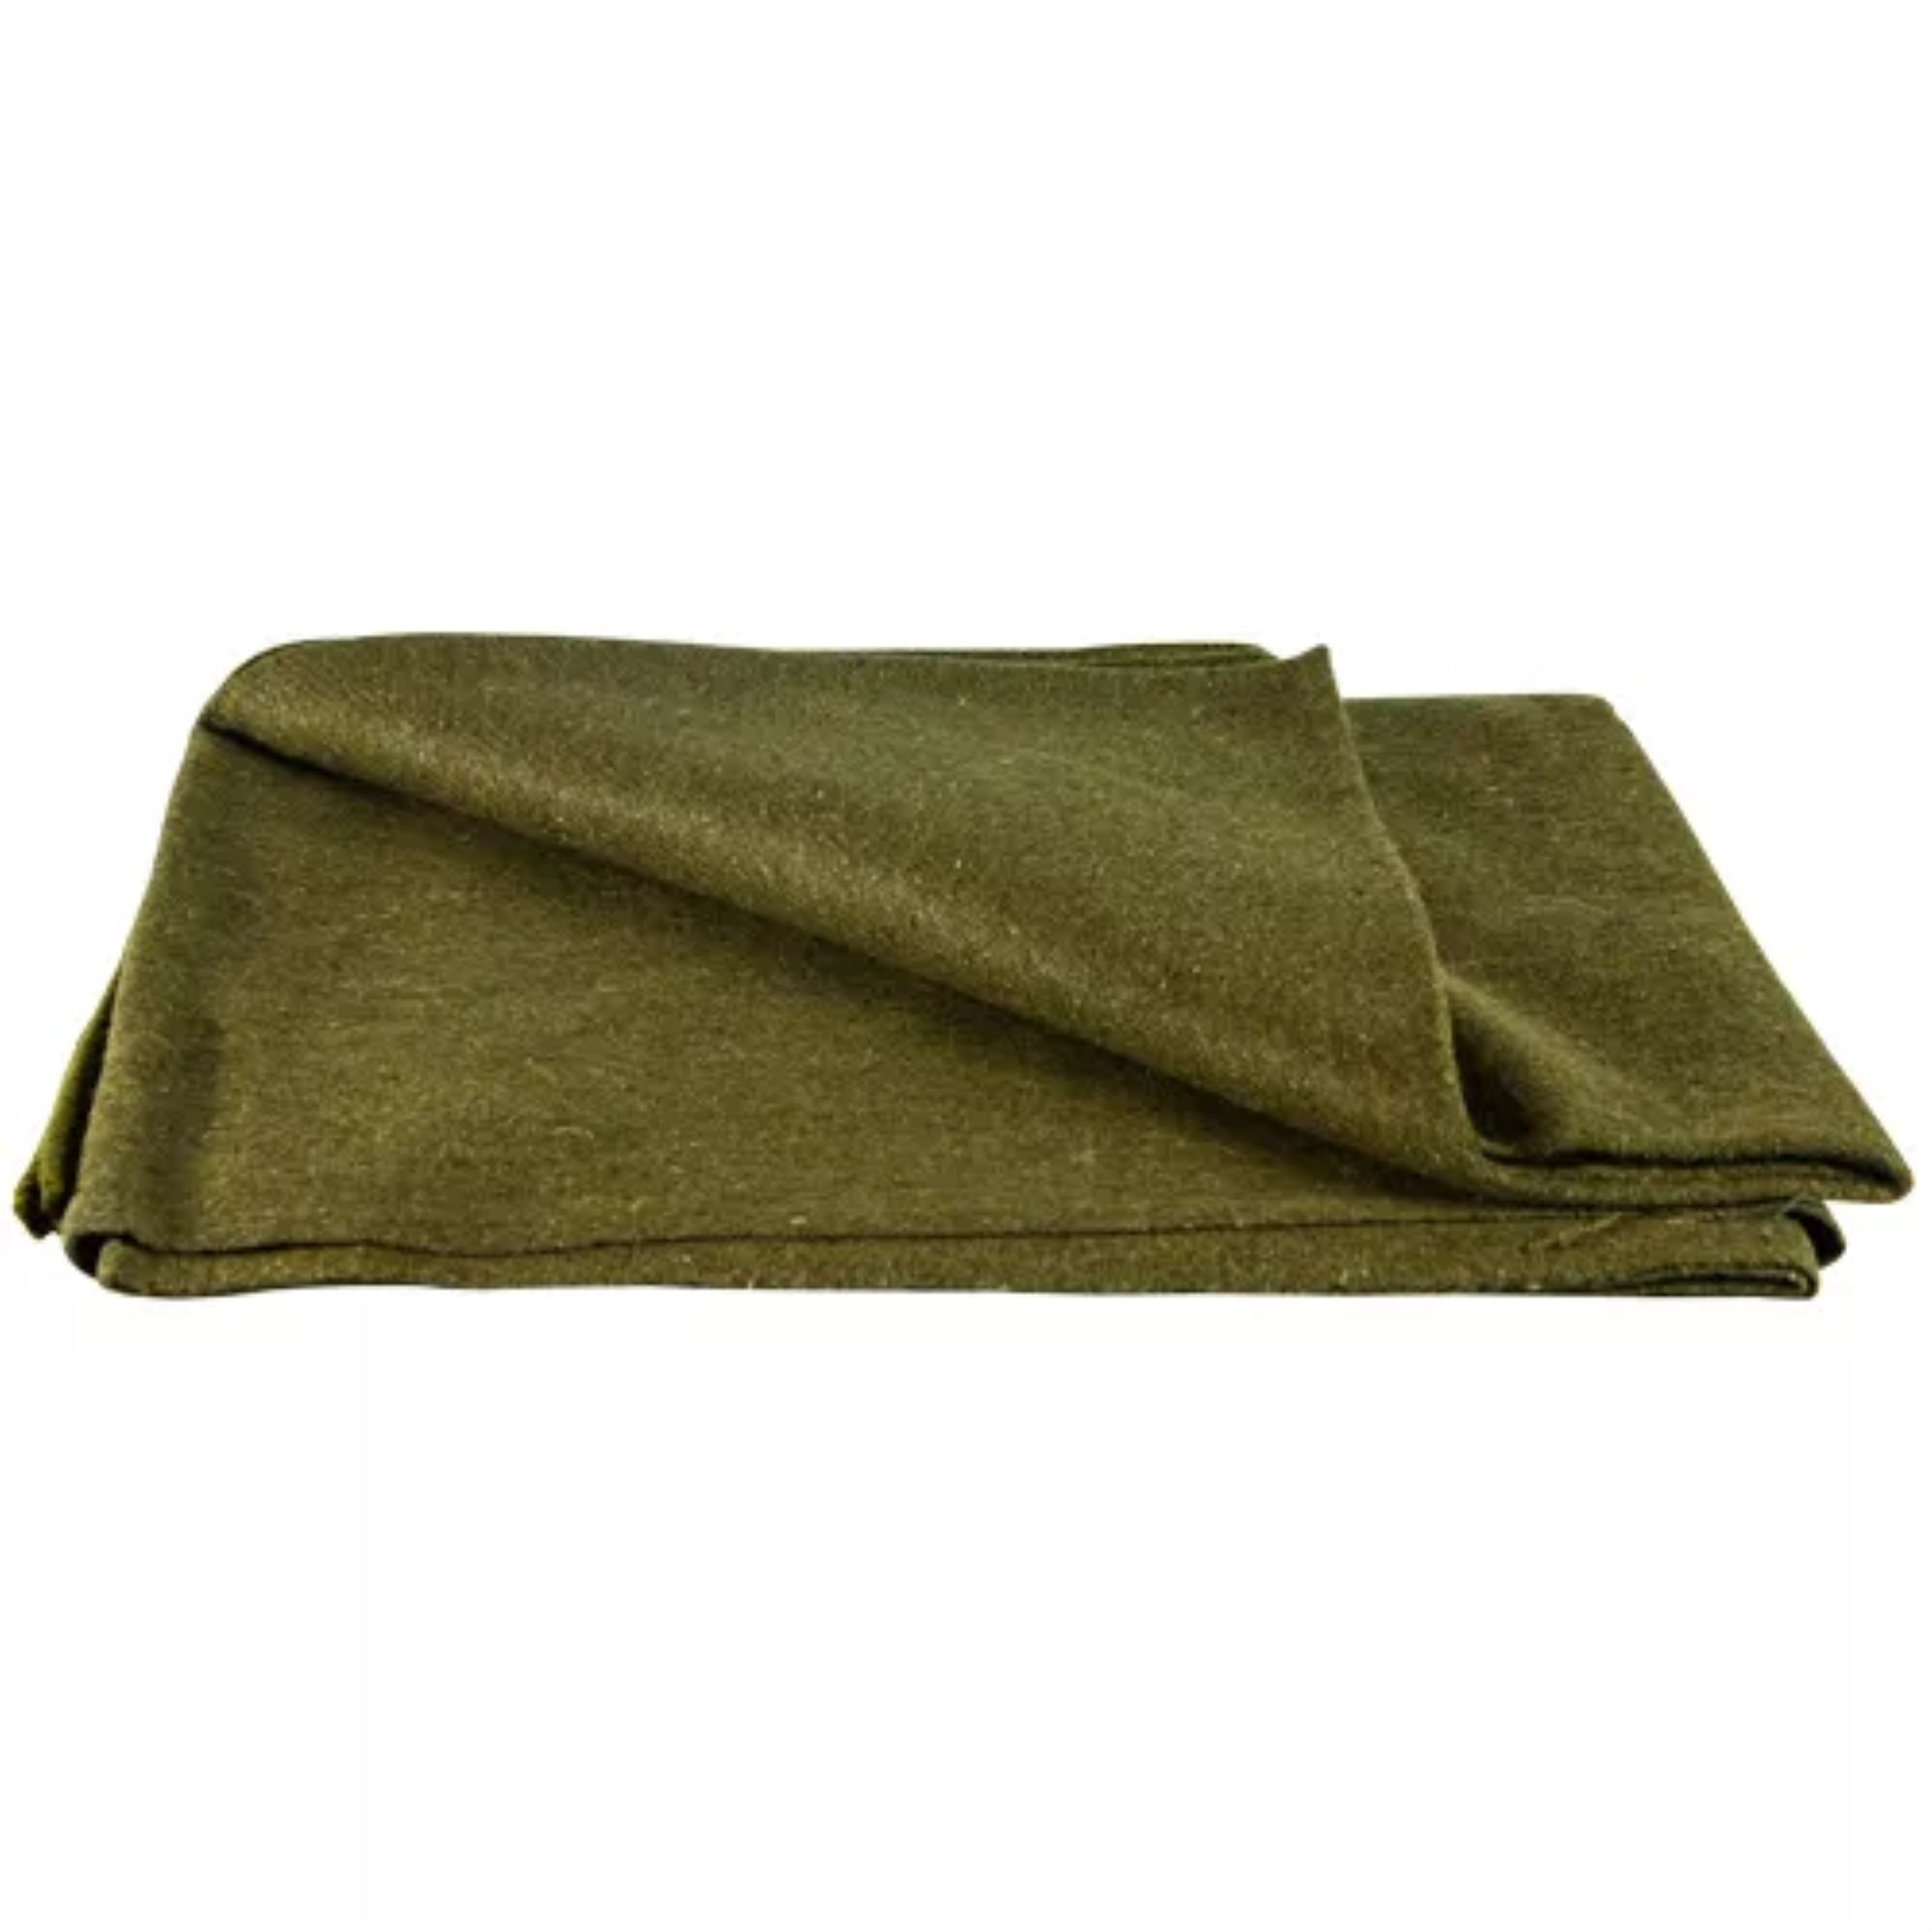 Olive Drab US 70% Virgin Wool Blanket 